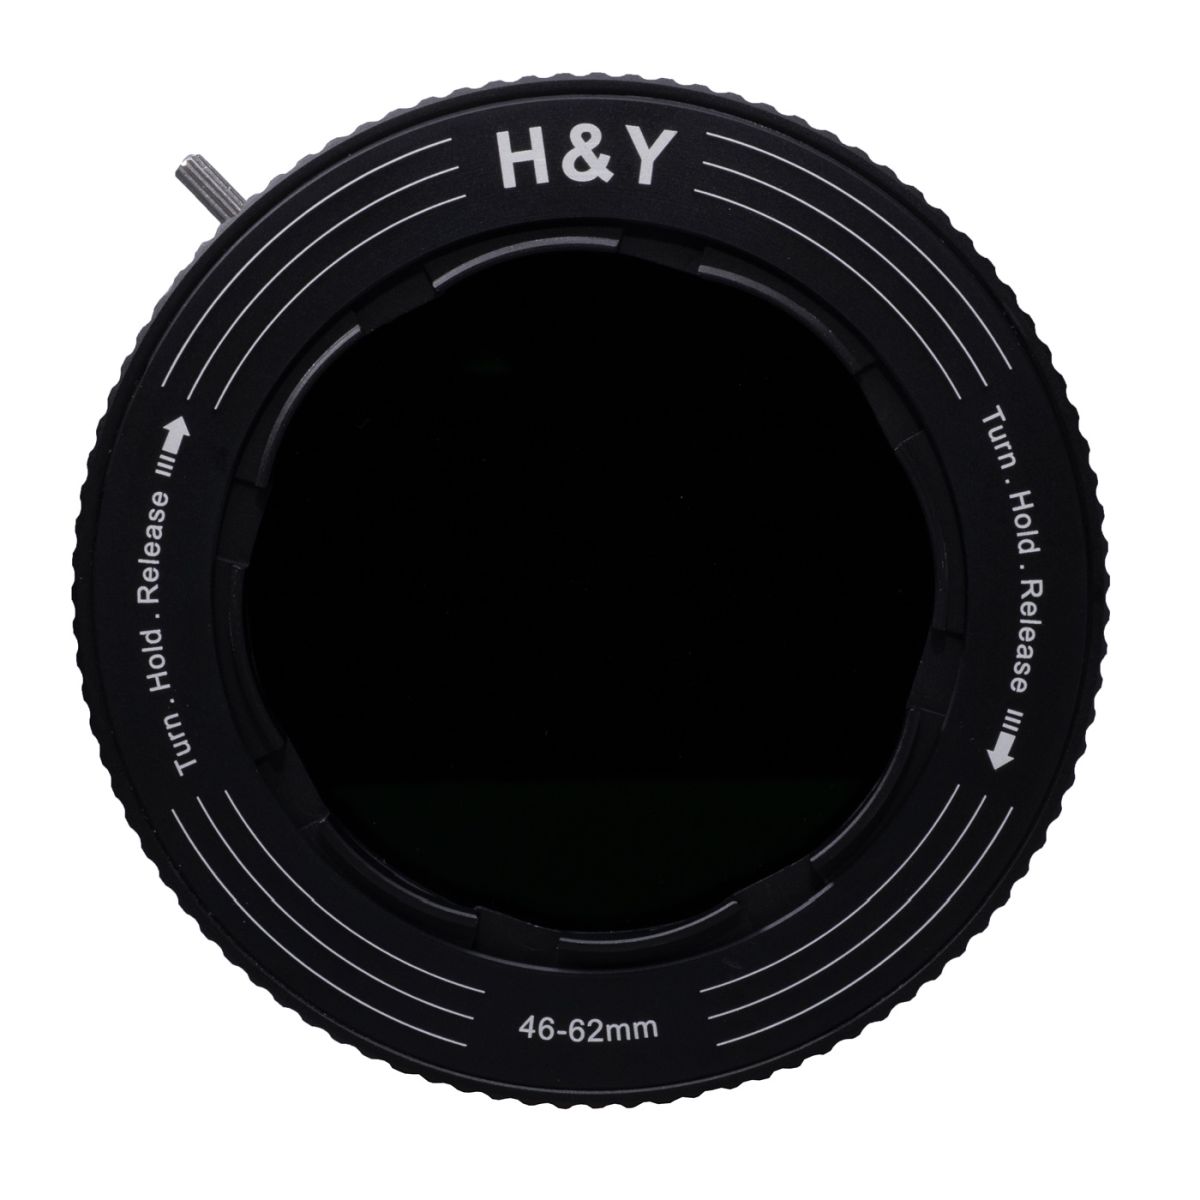 H&Y REVORING 46-62 mm ND3-ND1000 und CPL Filter